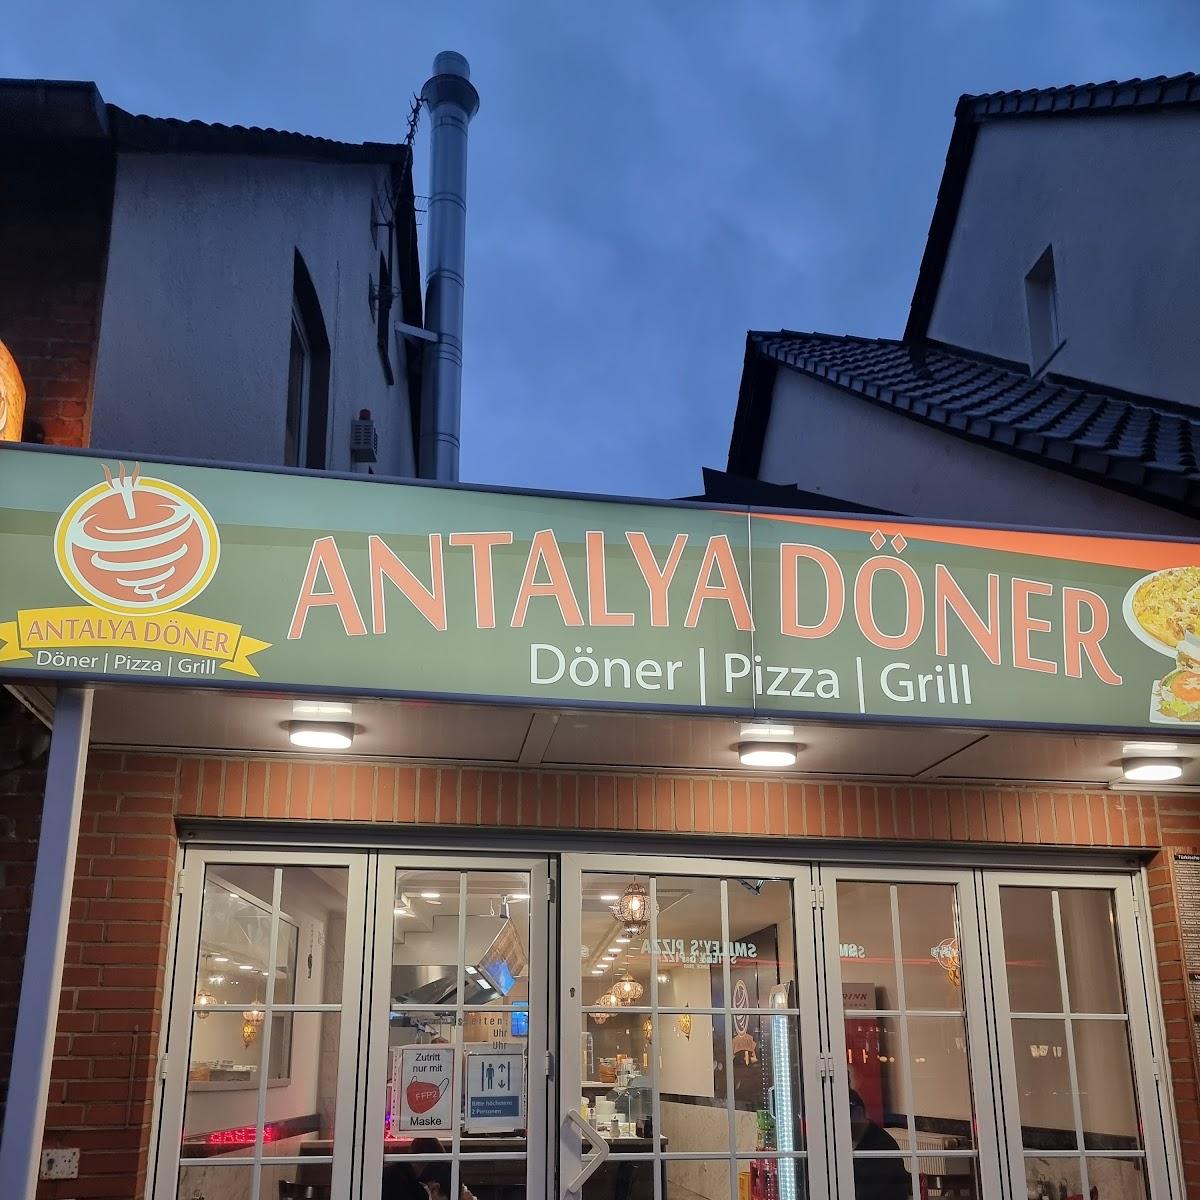 Restaurant "Antalya döner" in Hannover